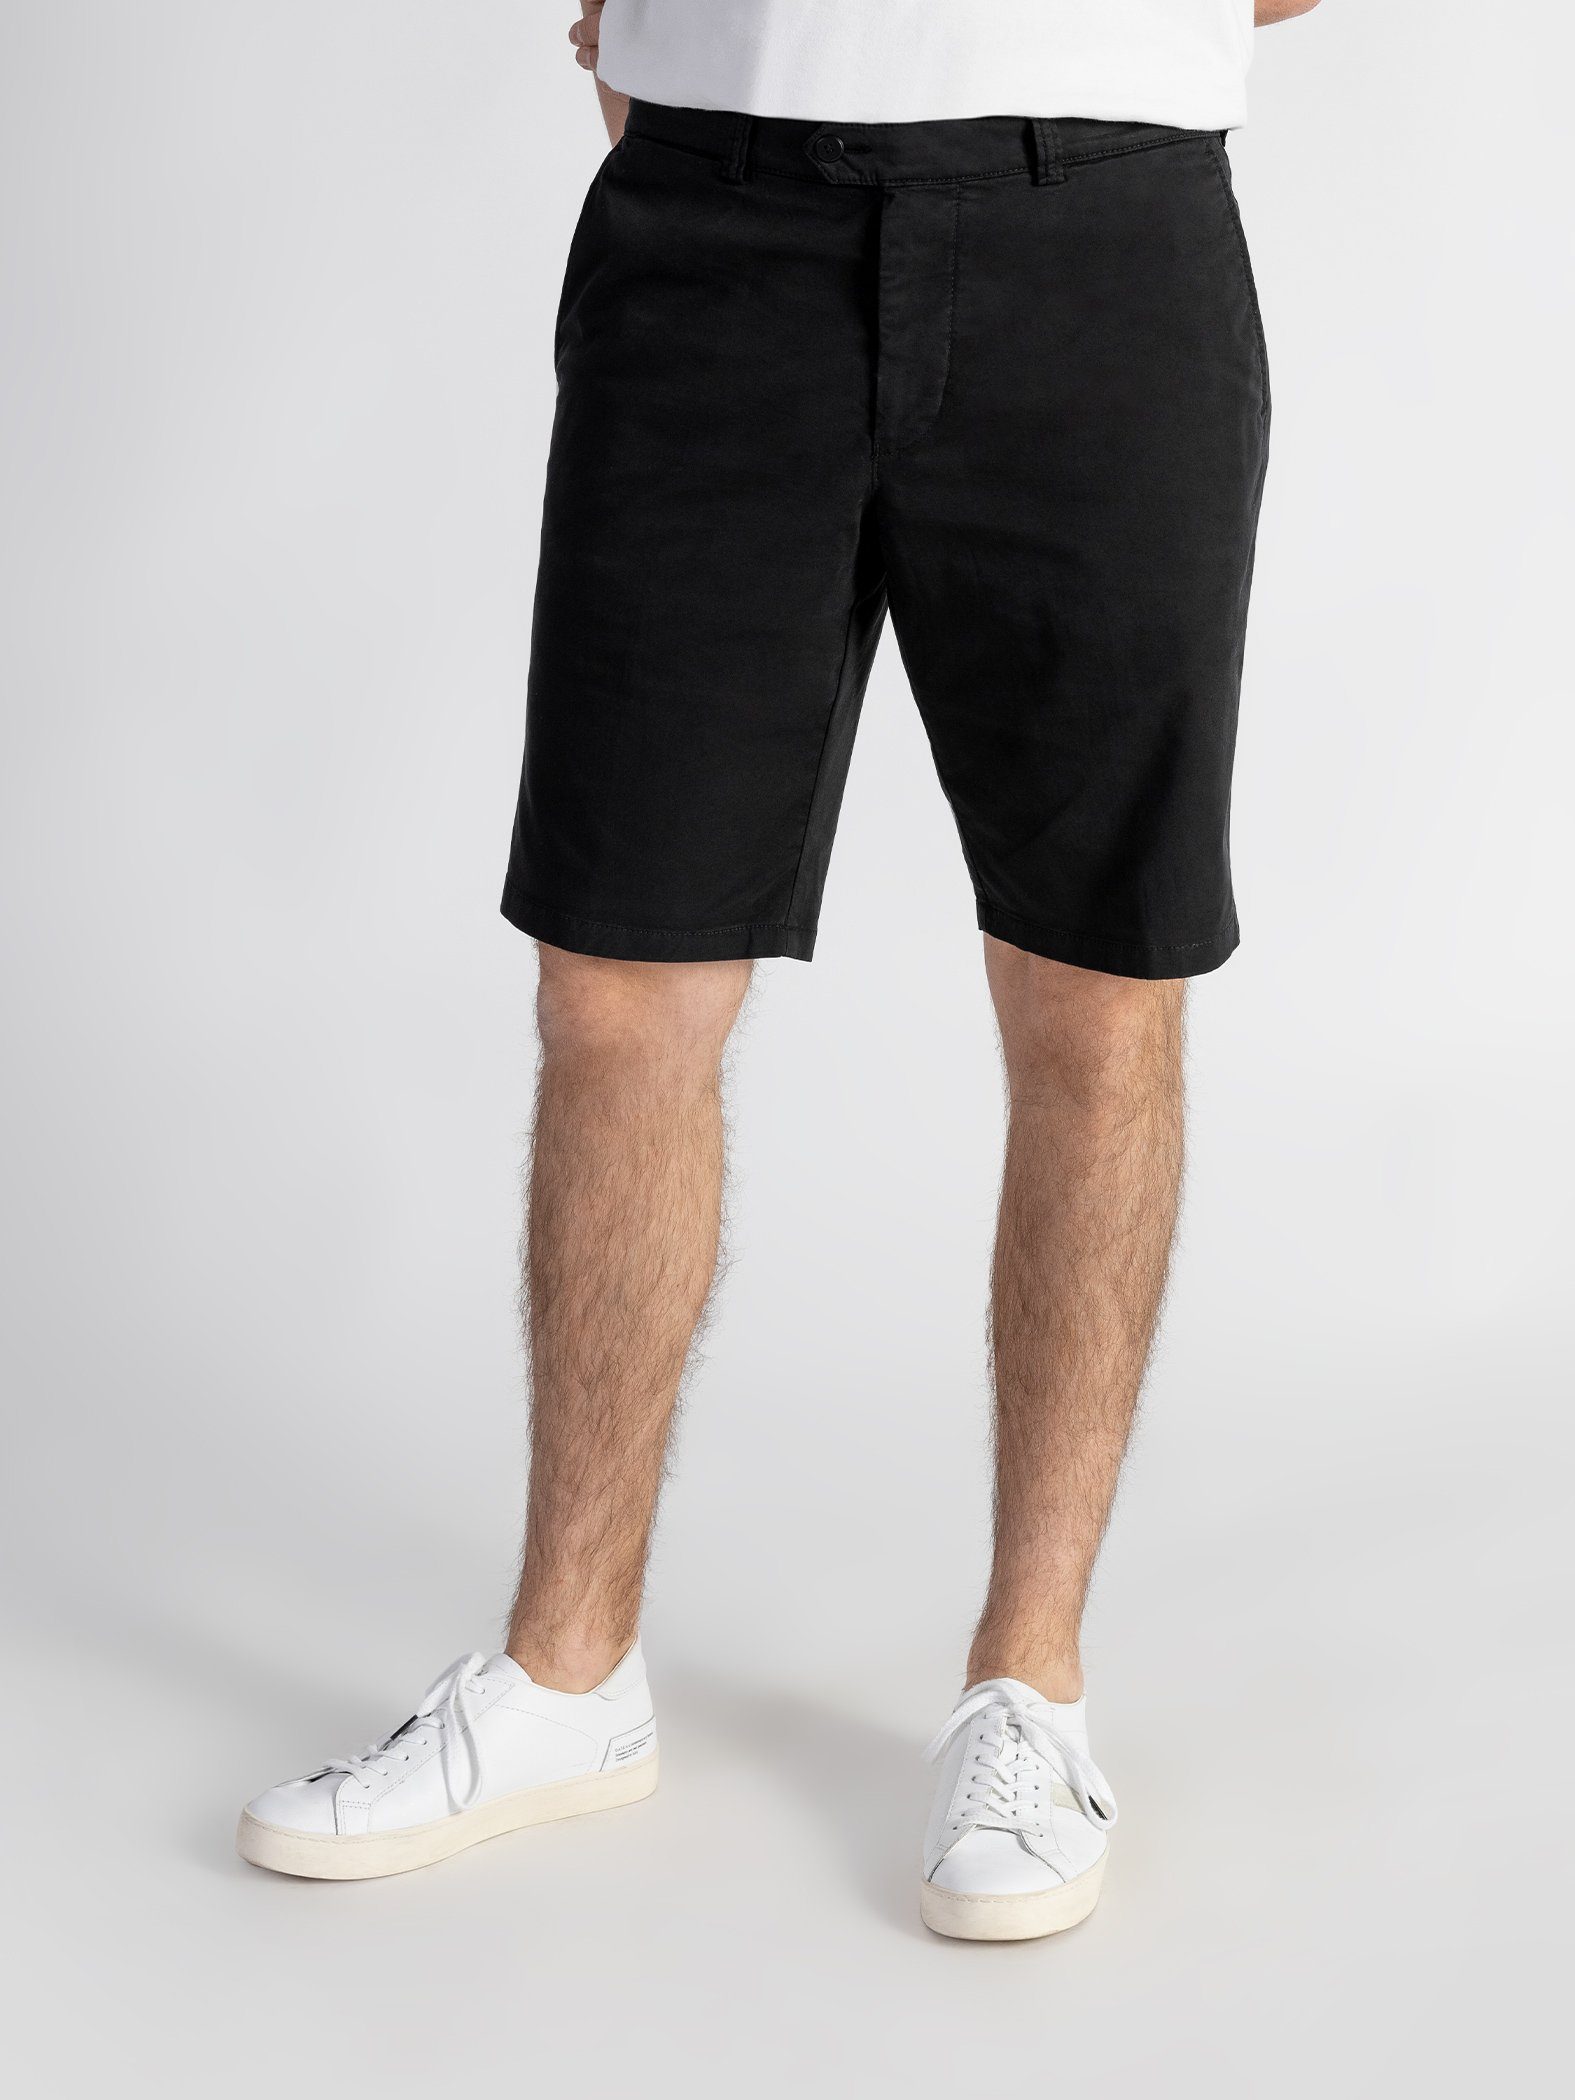 TwoMates Shorts Shorts mit elastischem GOTS-zertifiziert Bund, Schwarz Farbauswahl